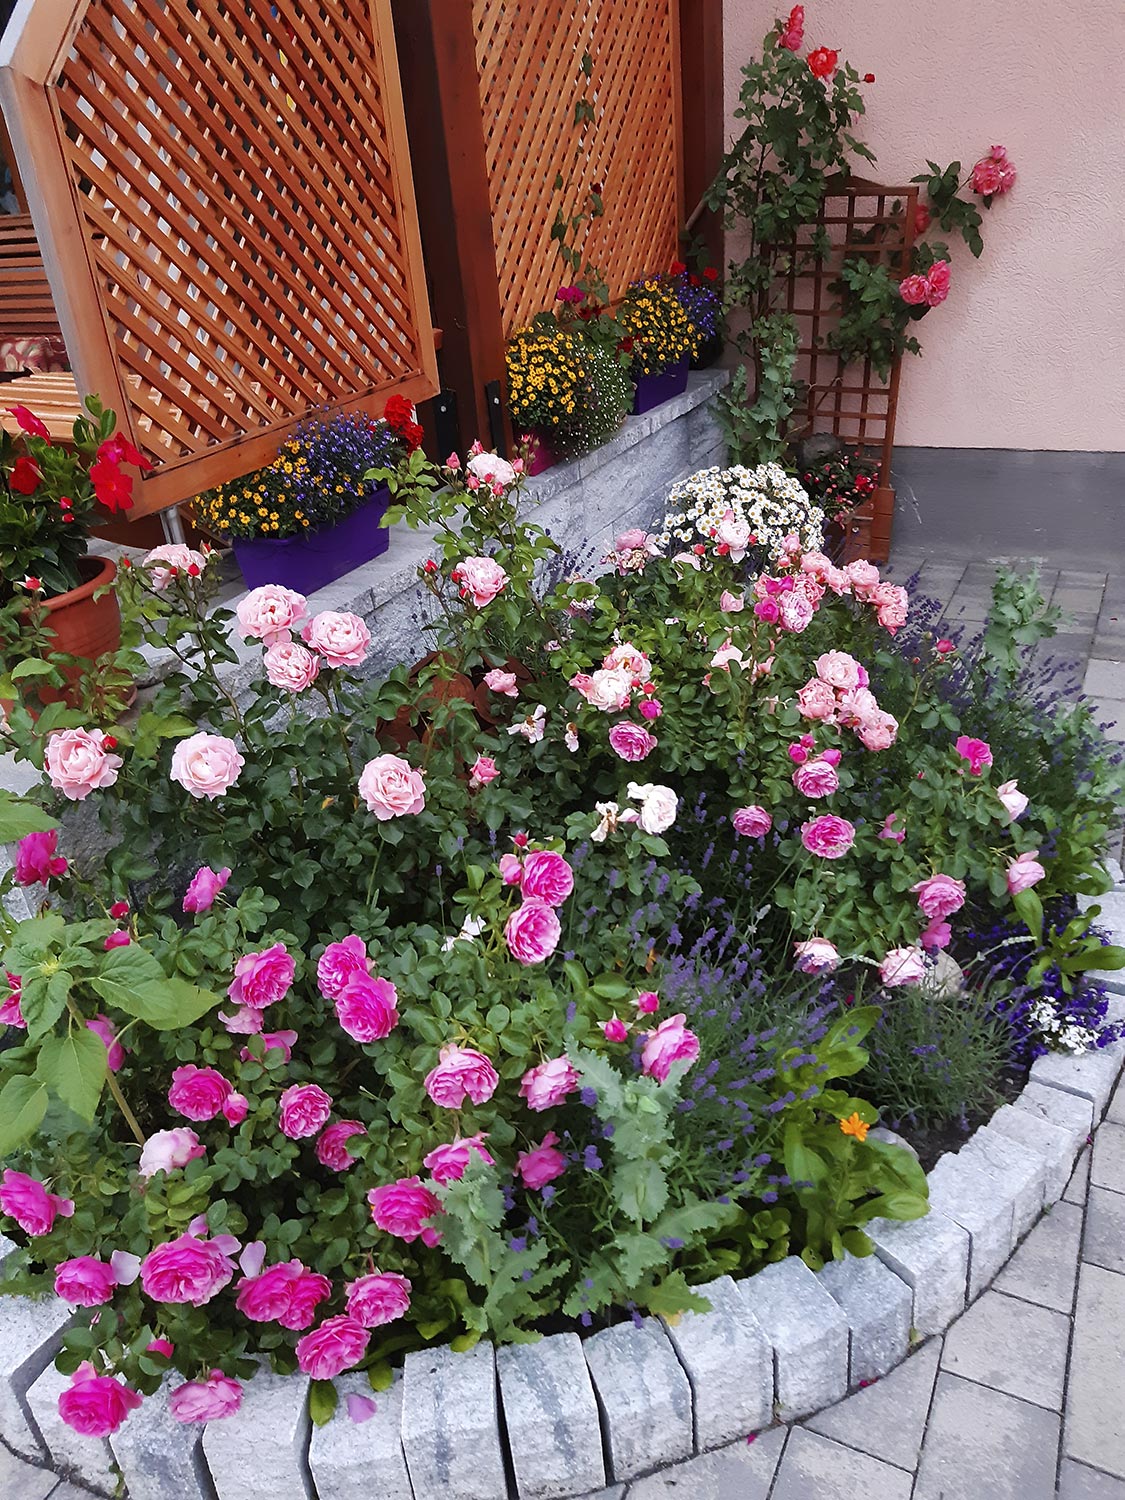 Flowers in the Garden